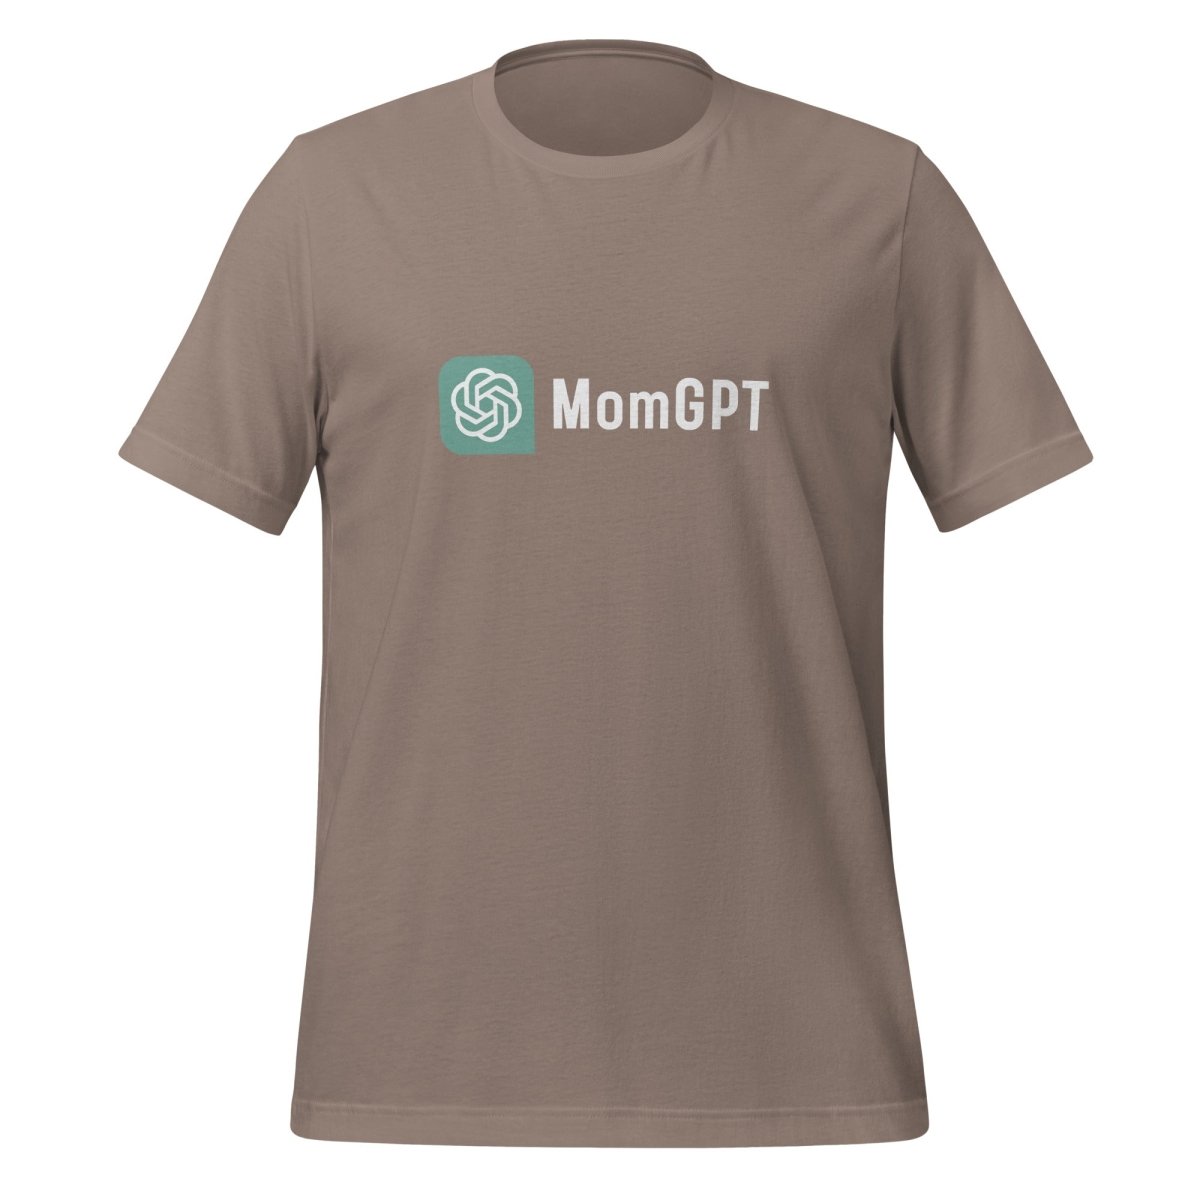 MomGPT T - Shirt (unisex) - Pebble - AI Store